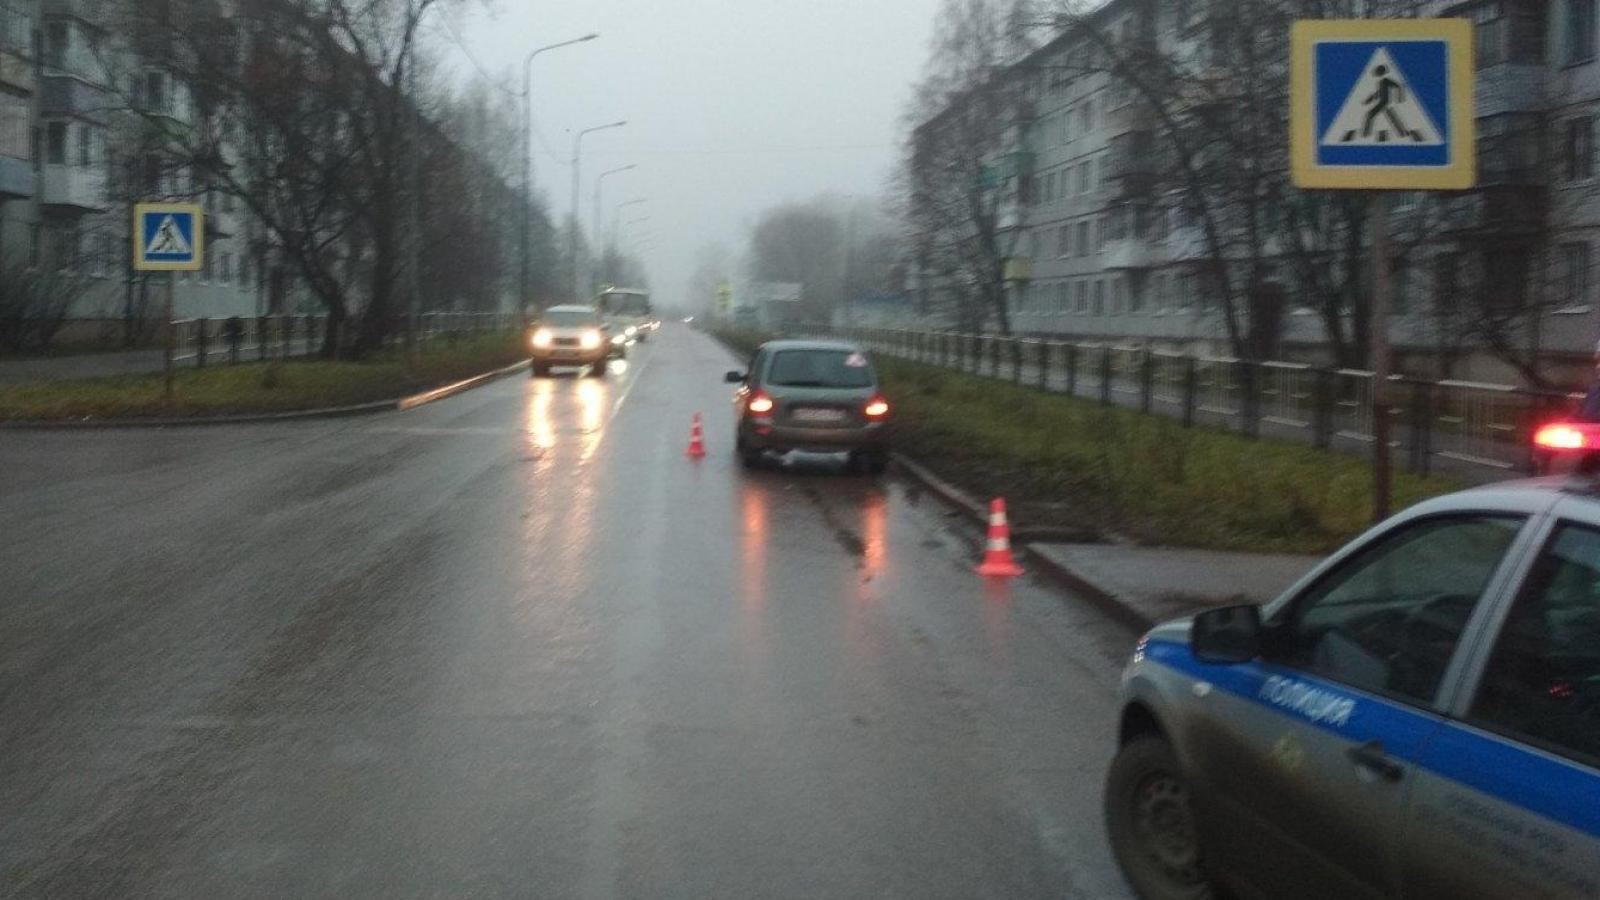 18 ноября 3 пешехода попали под колёса в Вологде 